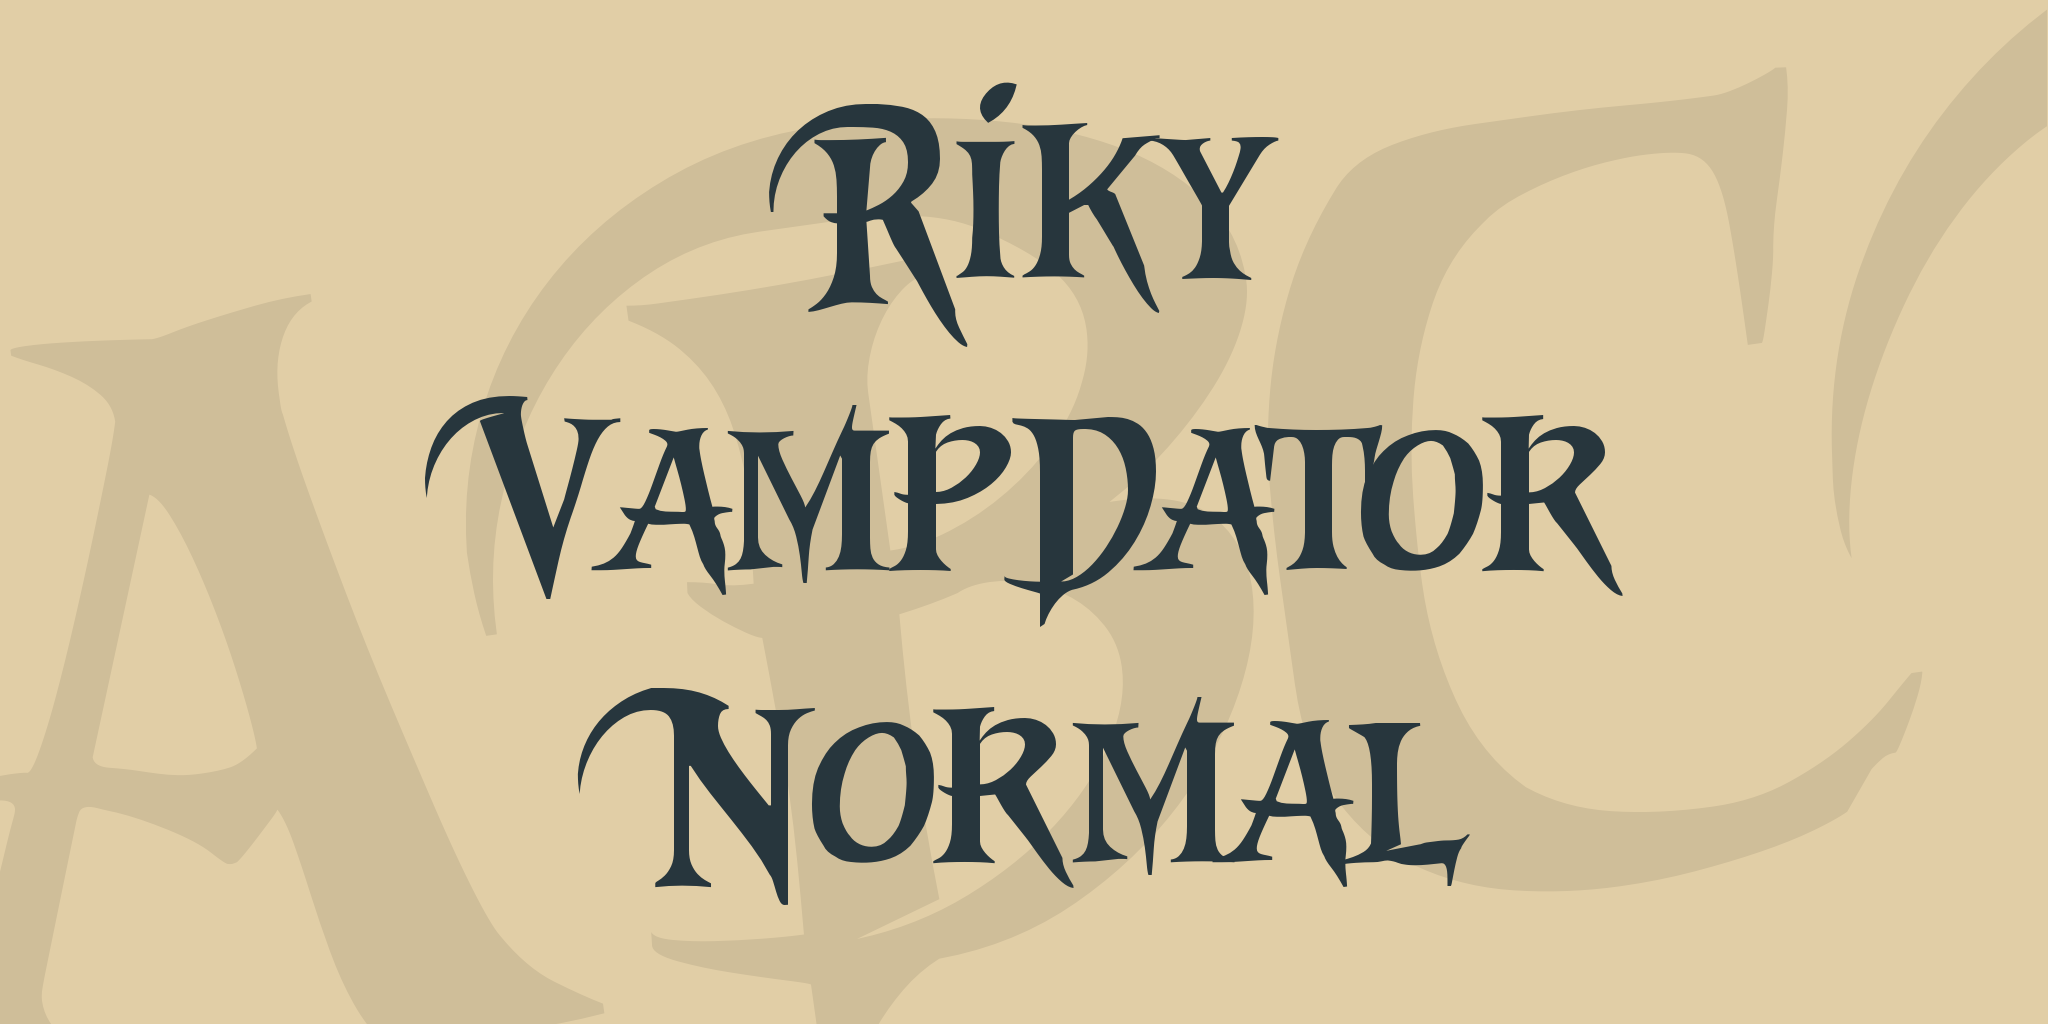 Riky Vampdator Normal